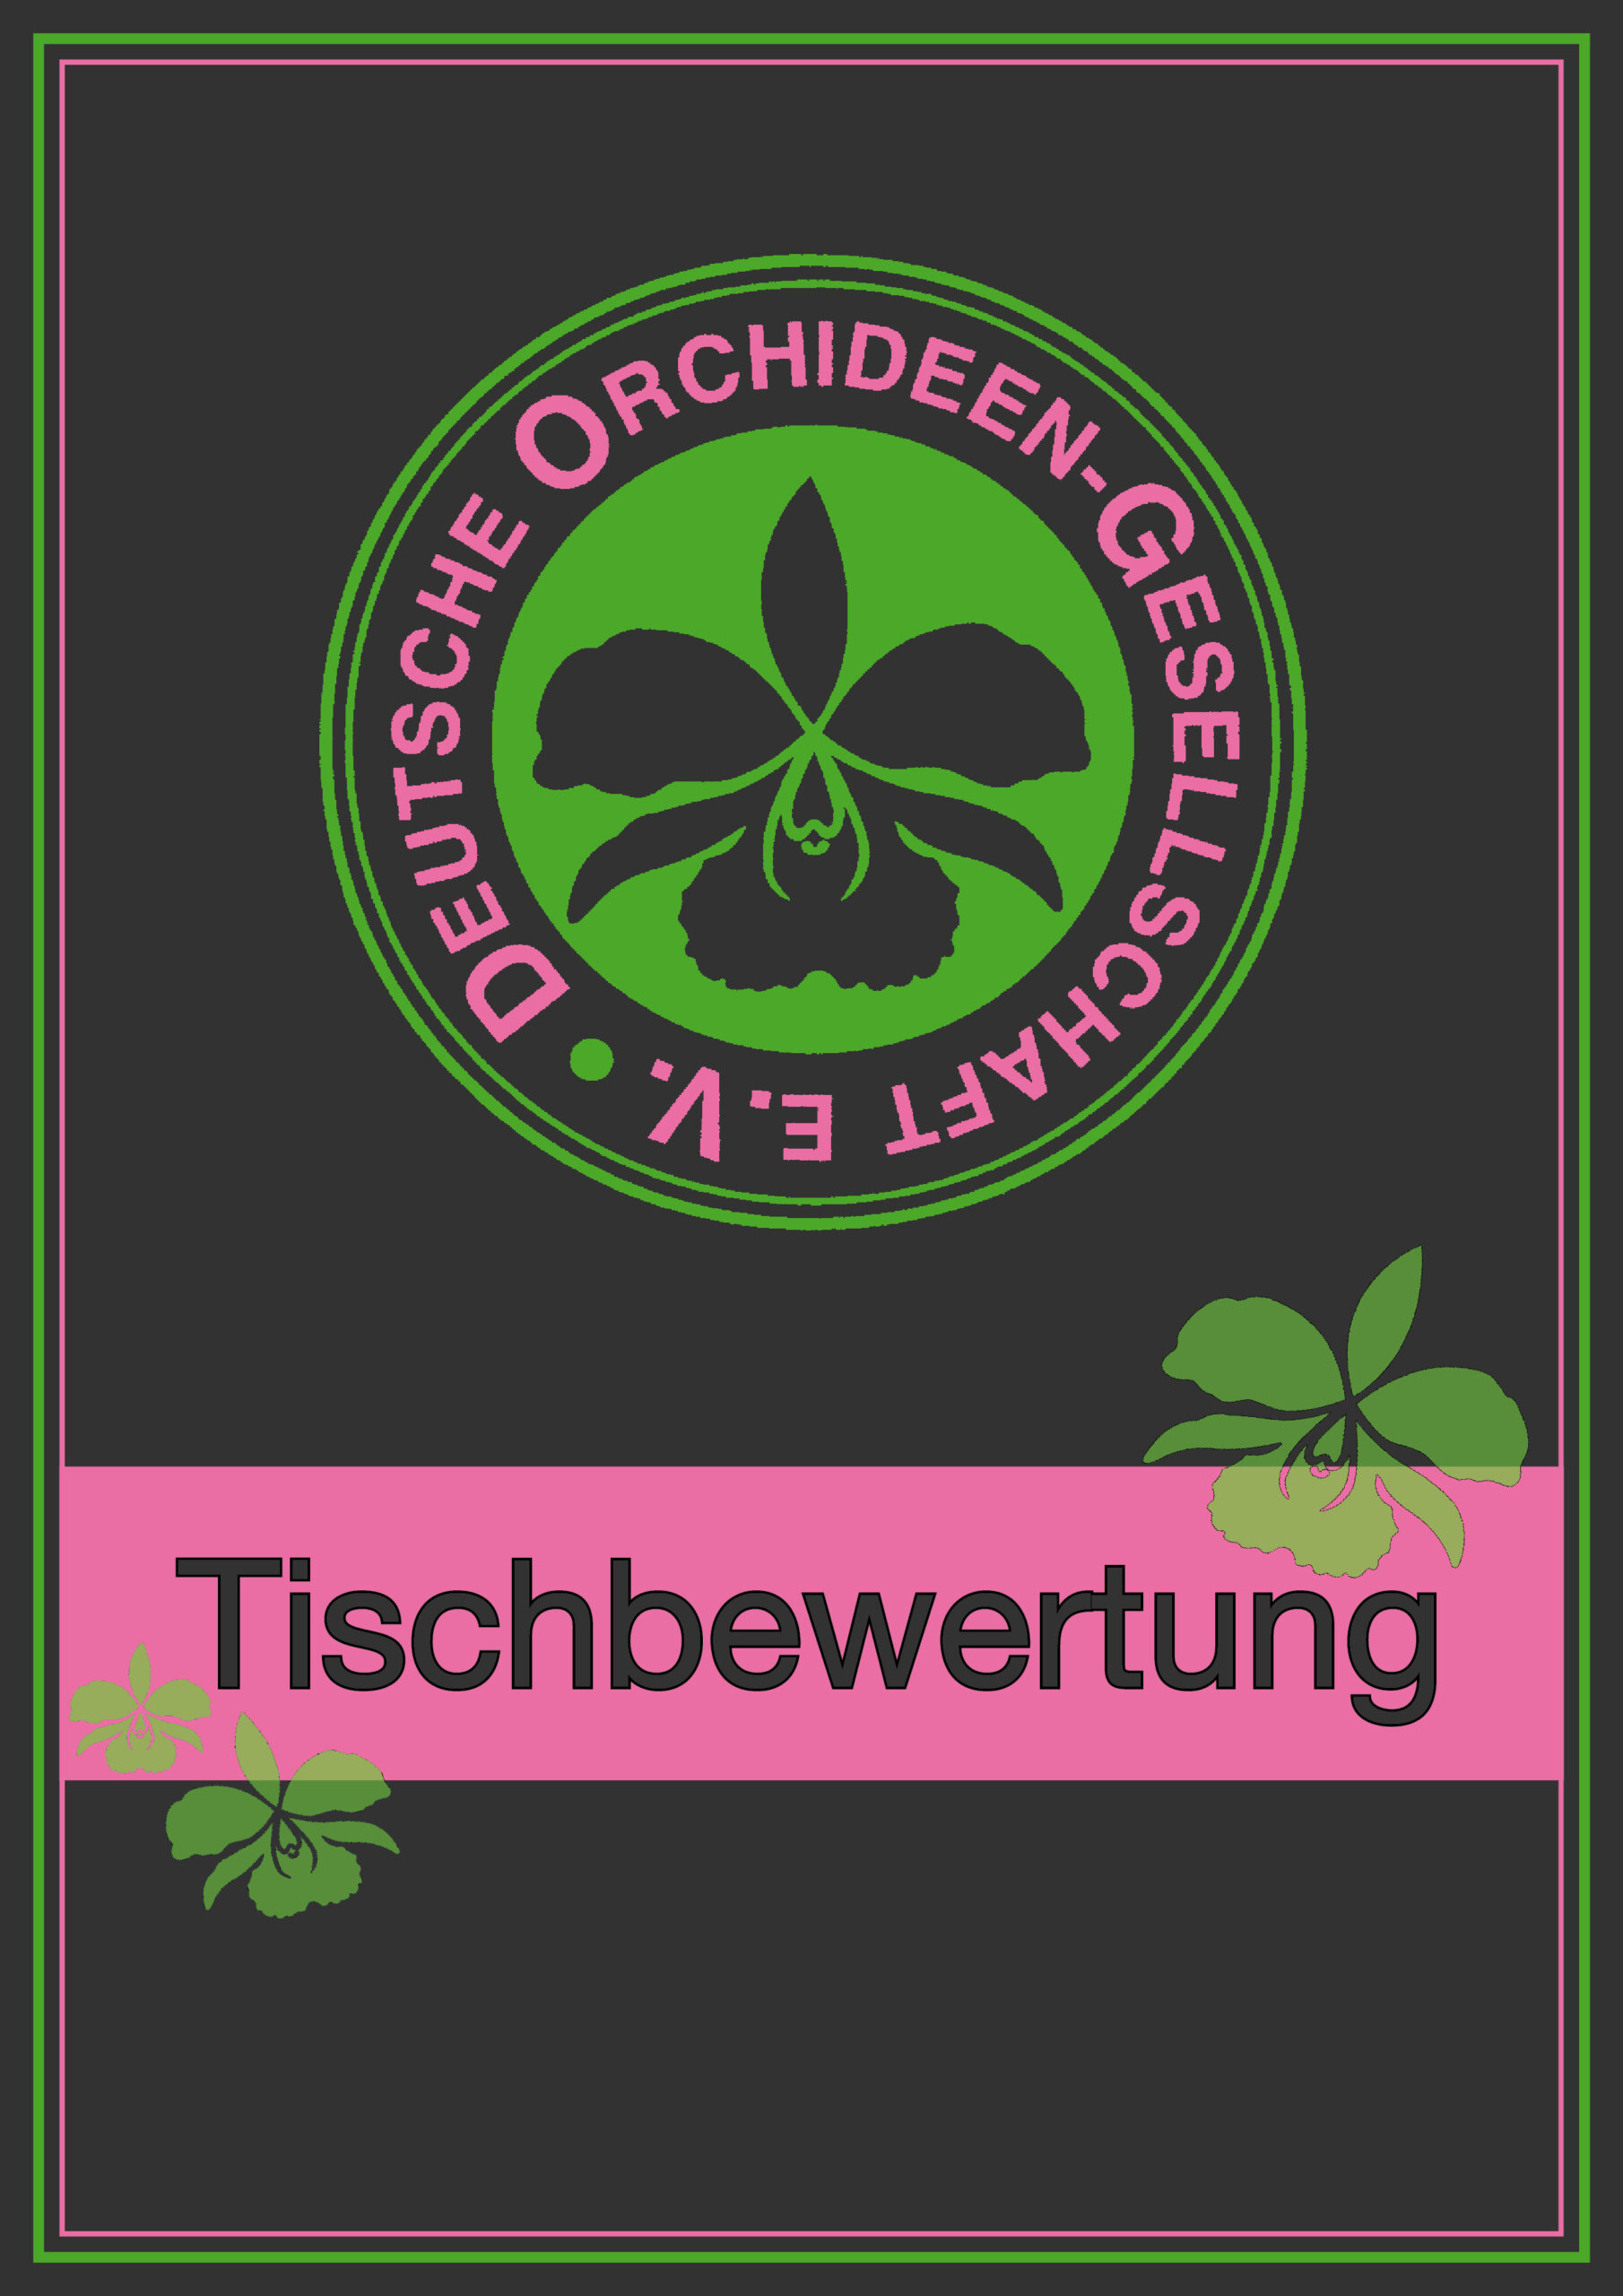 Tischbewertung Orchidee.de